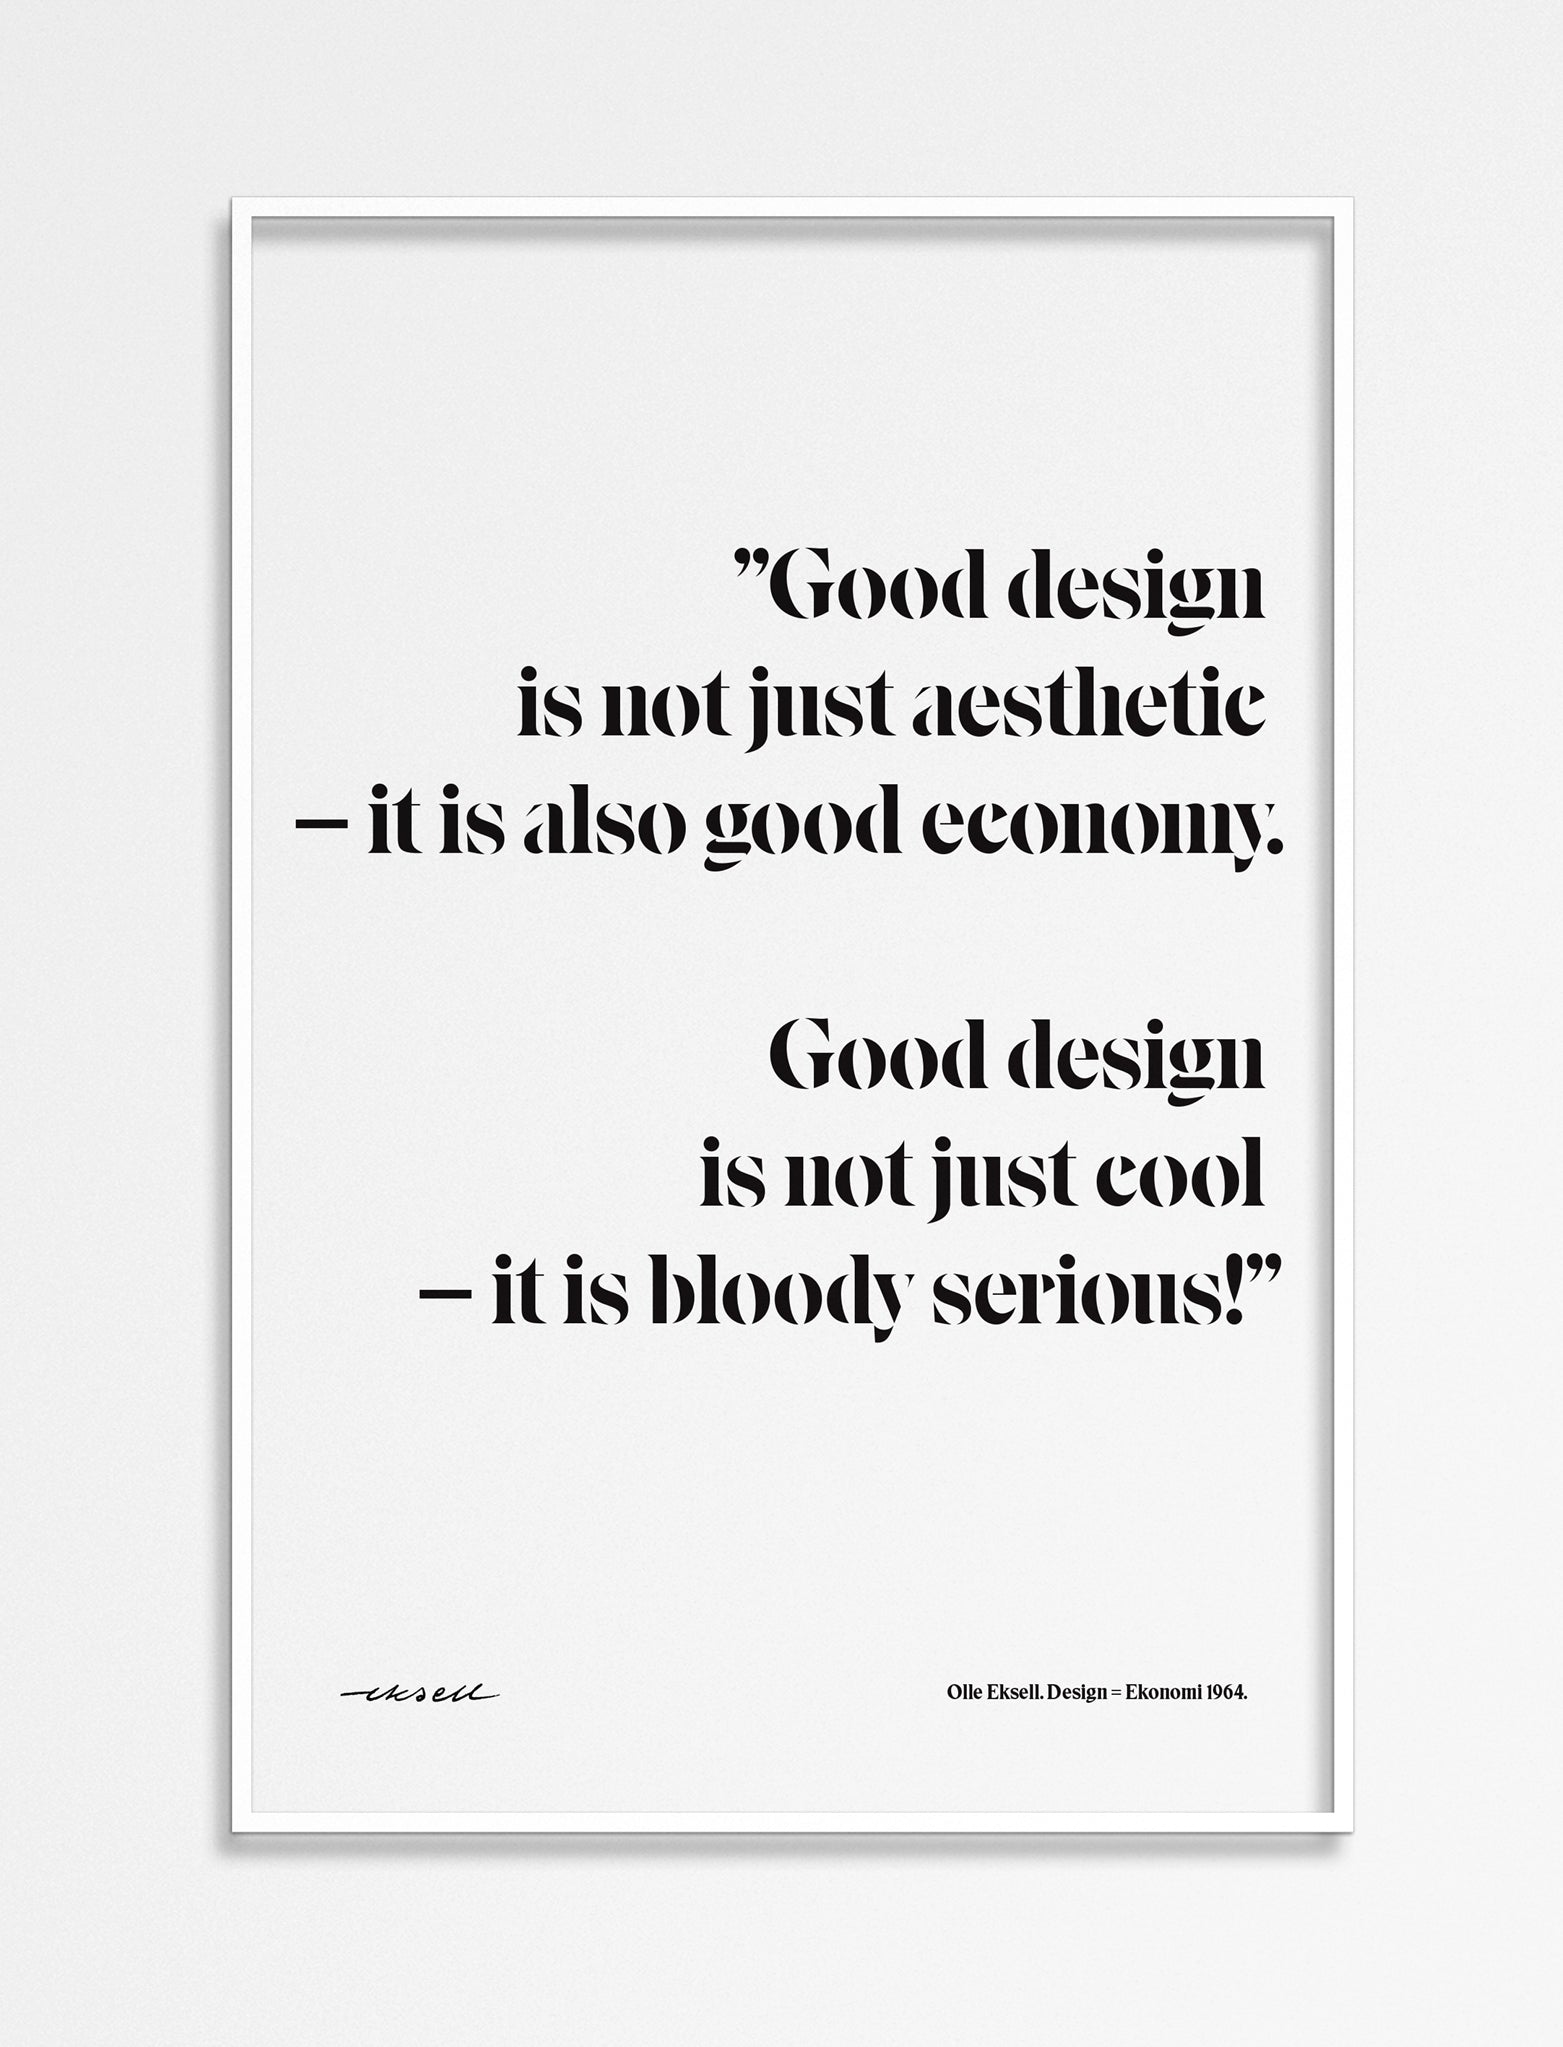 Design = Ekonomi - 1964 - Quote